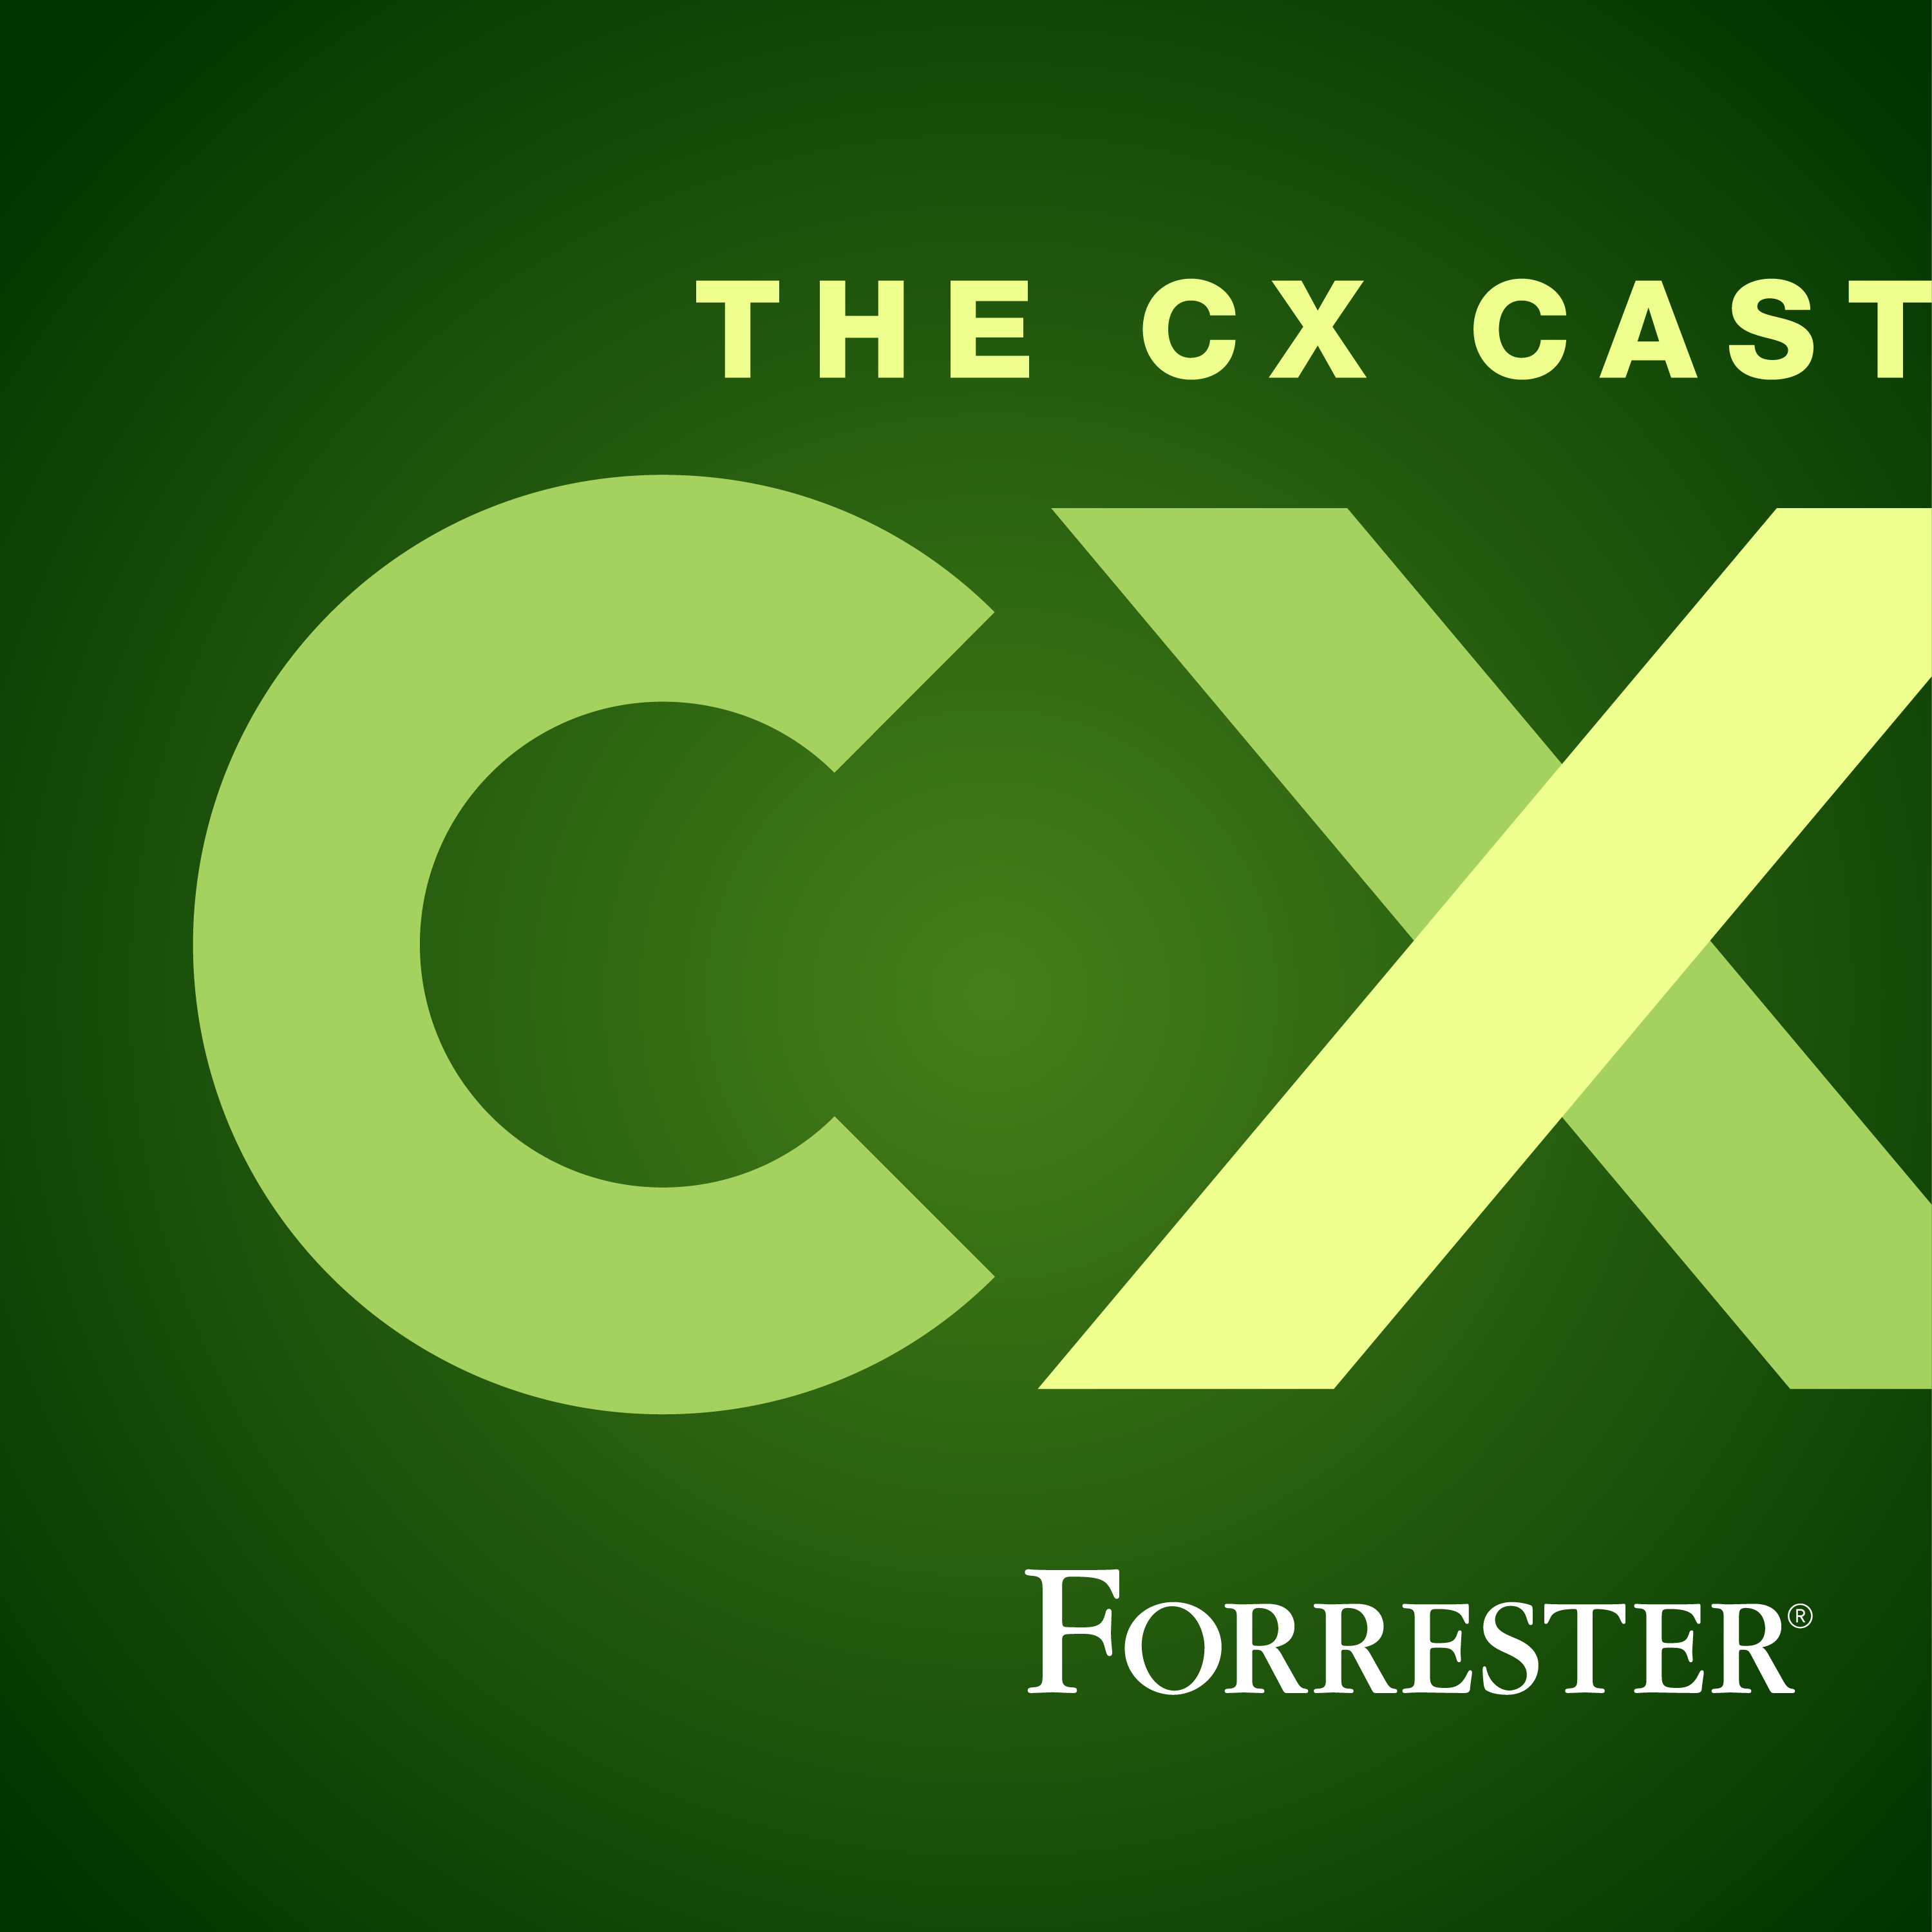 The CX Cast®